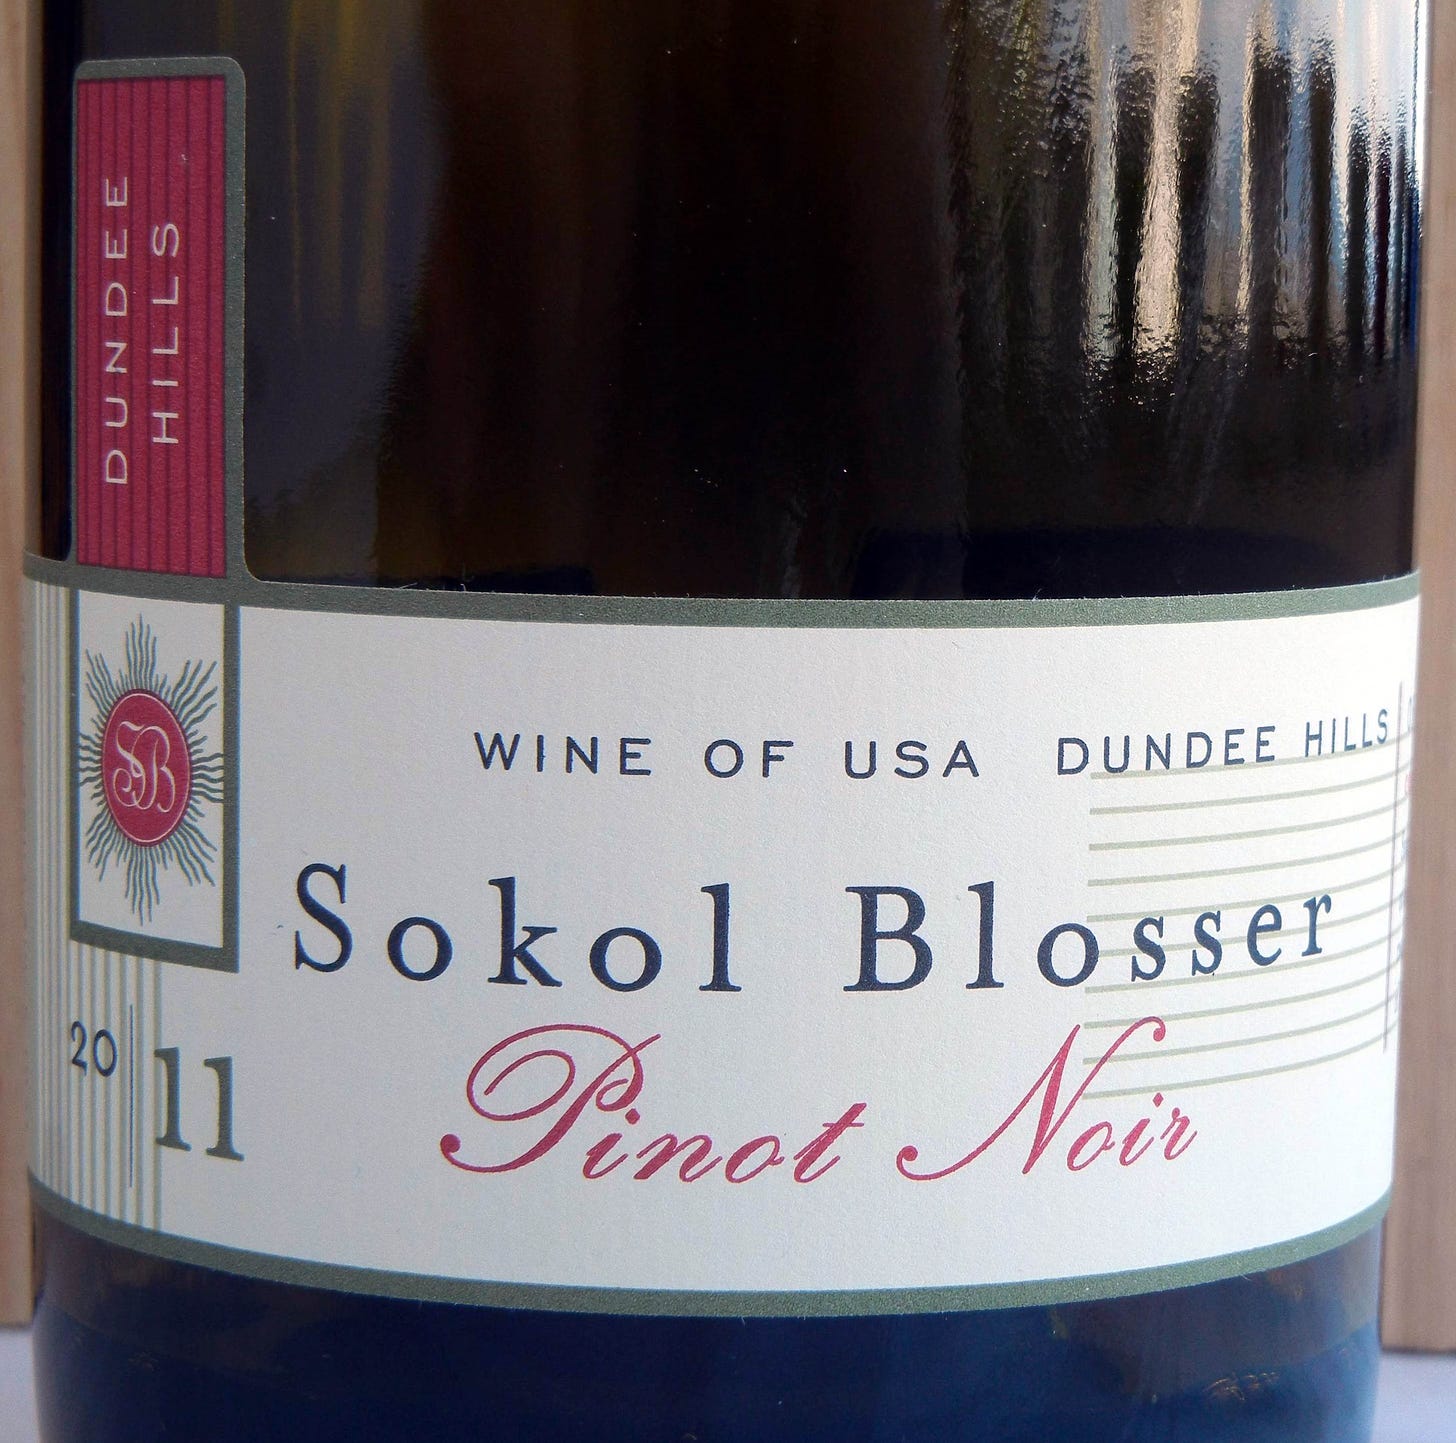 Sokol Blosser Dundee Hills Pinot Noir 2011 Label - BC Pinot Noir Tasting Review 13